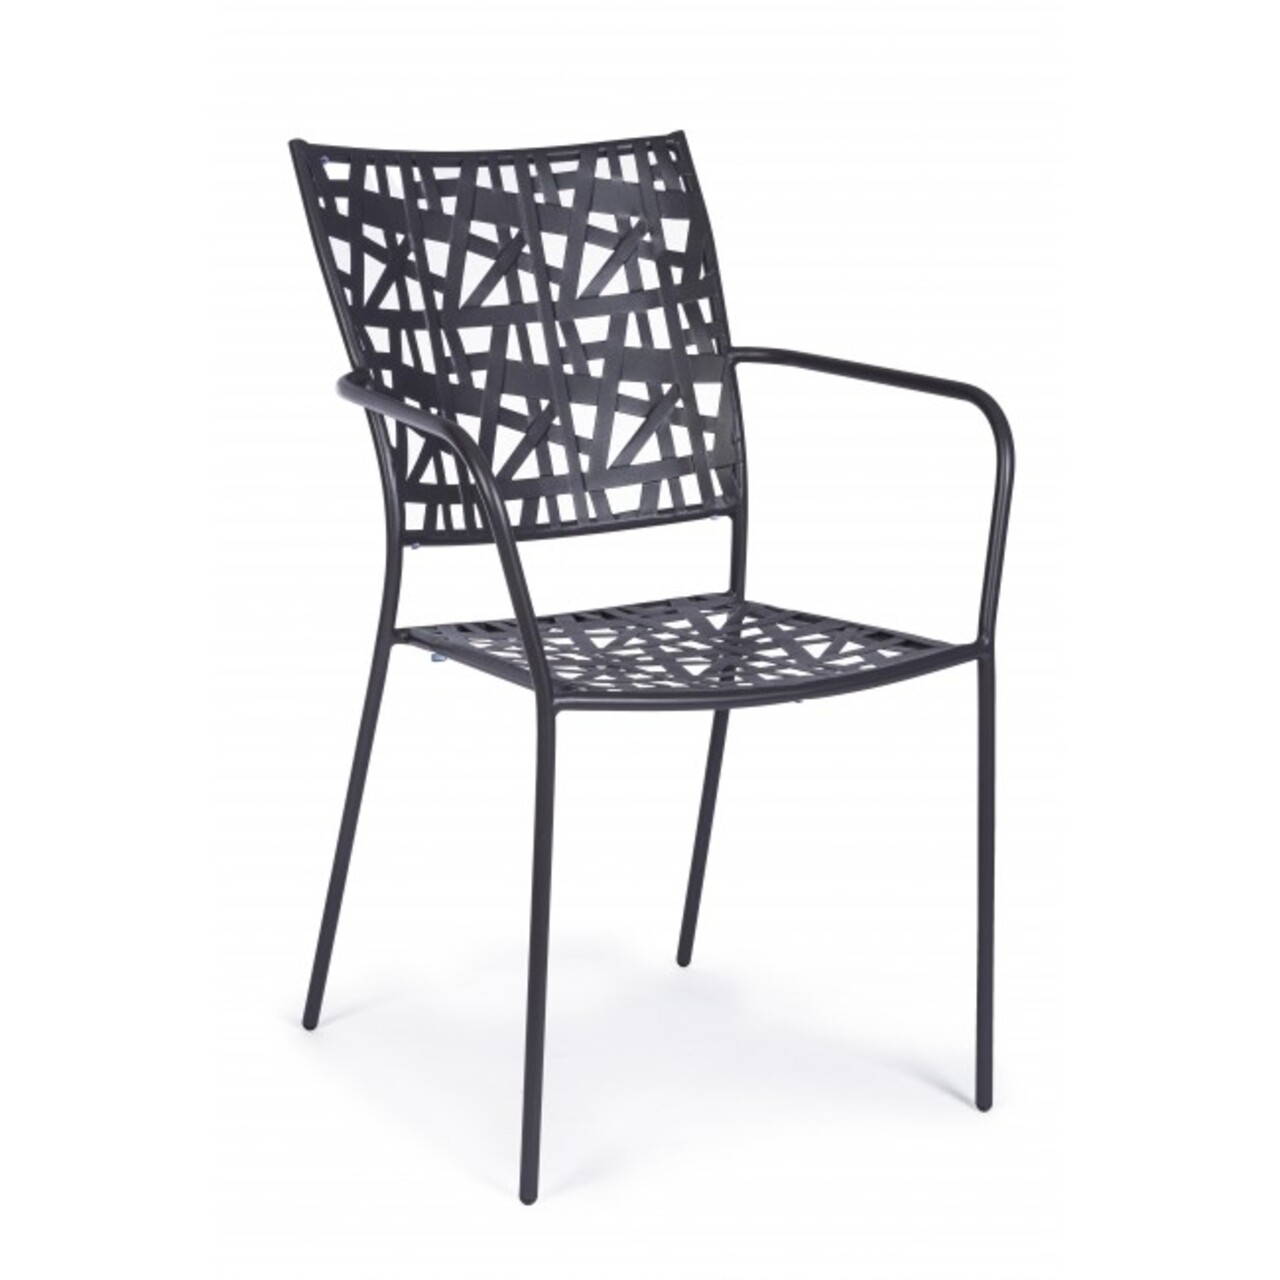 Kelsie Kerti szék, Bizzotto, 54x55x89 cm, acél, szénszürke